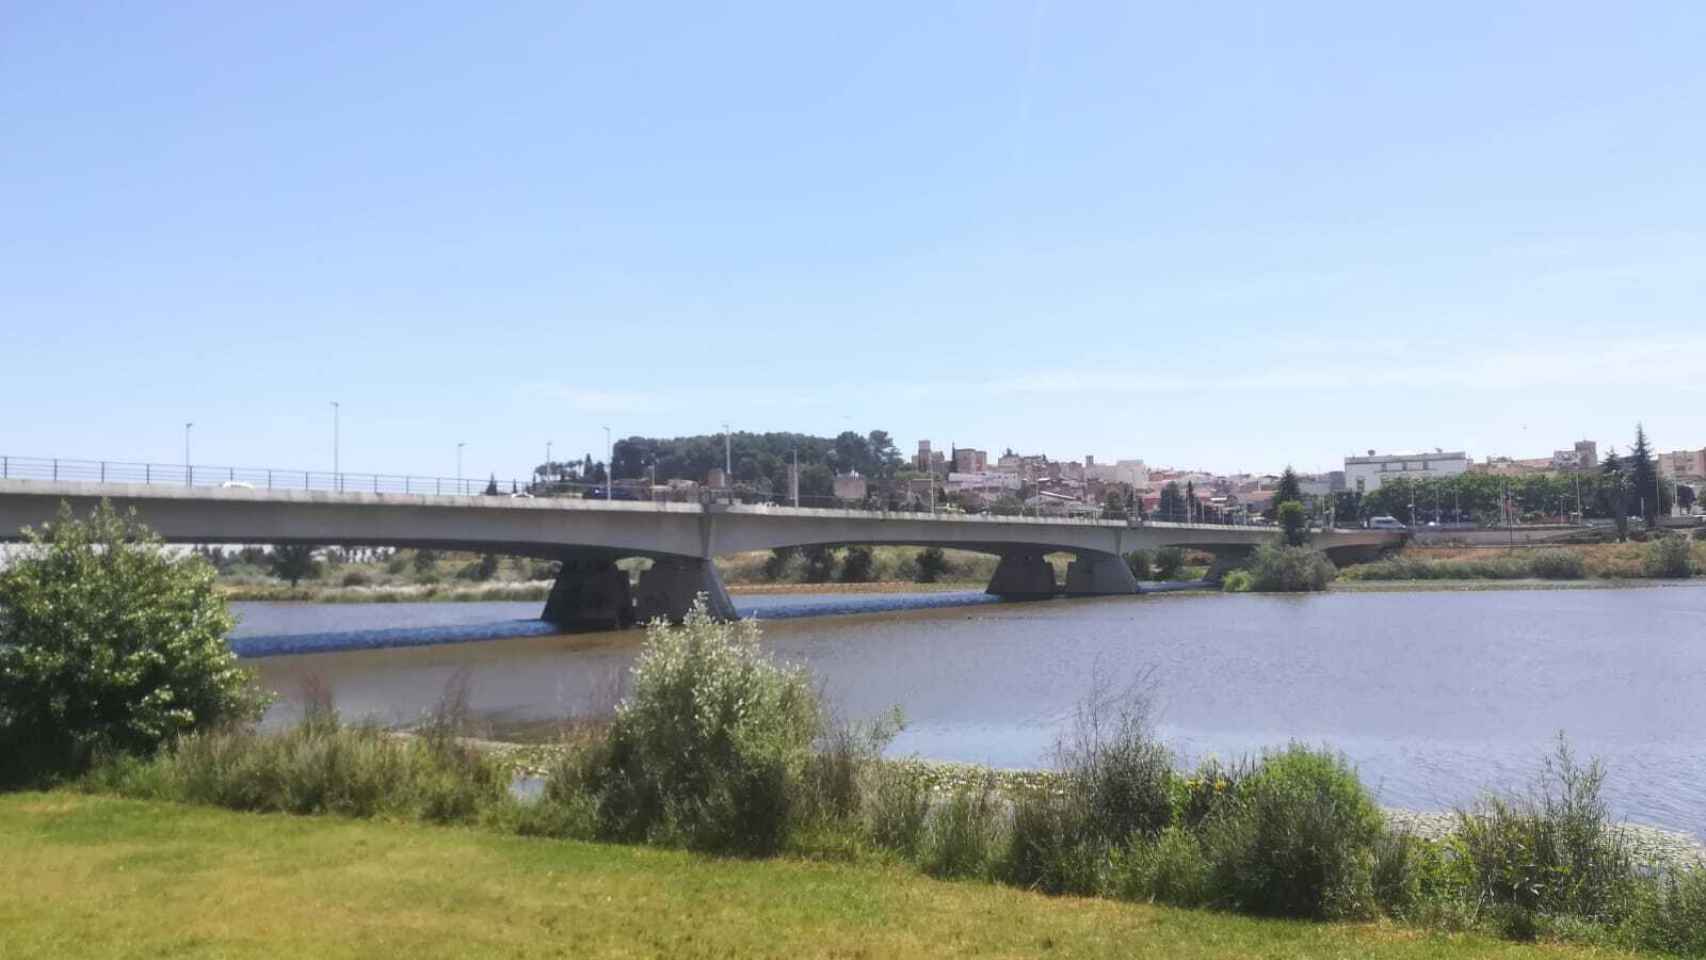 Puente desde el que cayó el diestro nacido en las Islas Baleares.